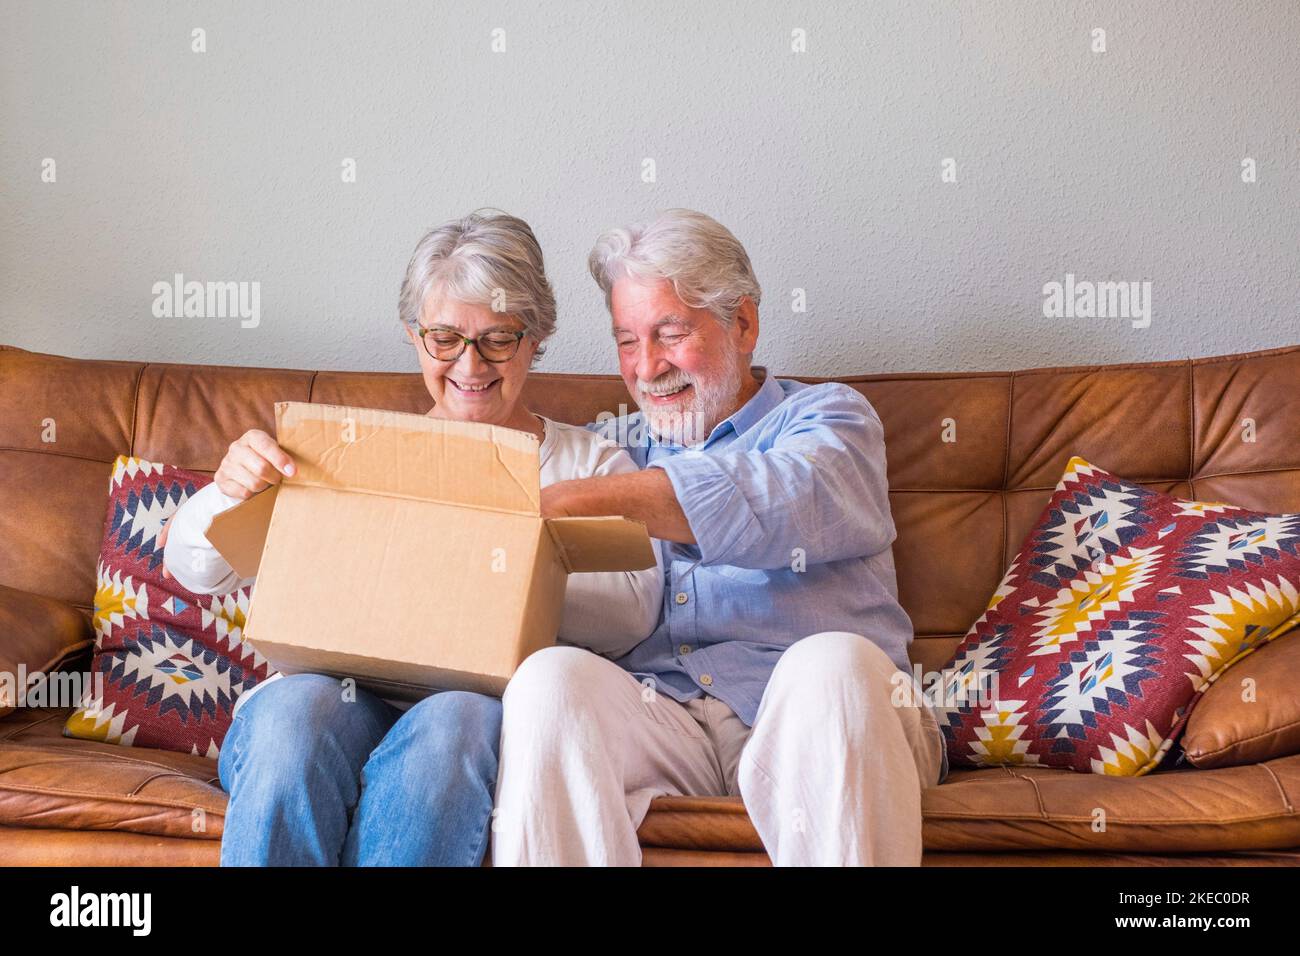 Altes Paar, das zu Hause den Lieferkarton auspackte. Glückliches Seniorehepaar, das im Wohnzimmer zu Hause auf dem Sofa saß und die Kartonschachtel ansah. Ein älteres Paar, das auscheckte, brachte Sachen zu Hause. Stockfoto